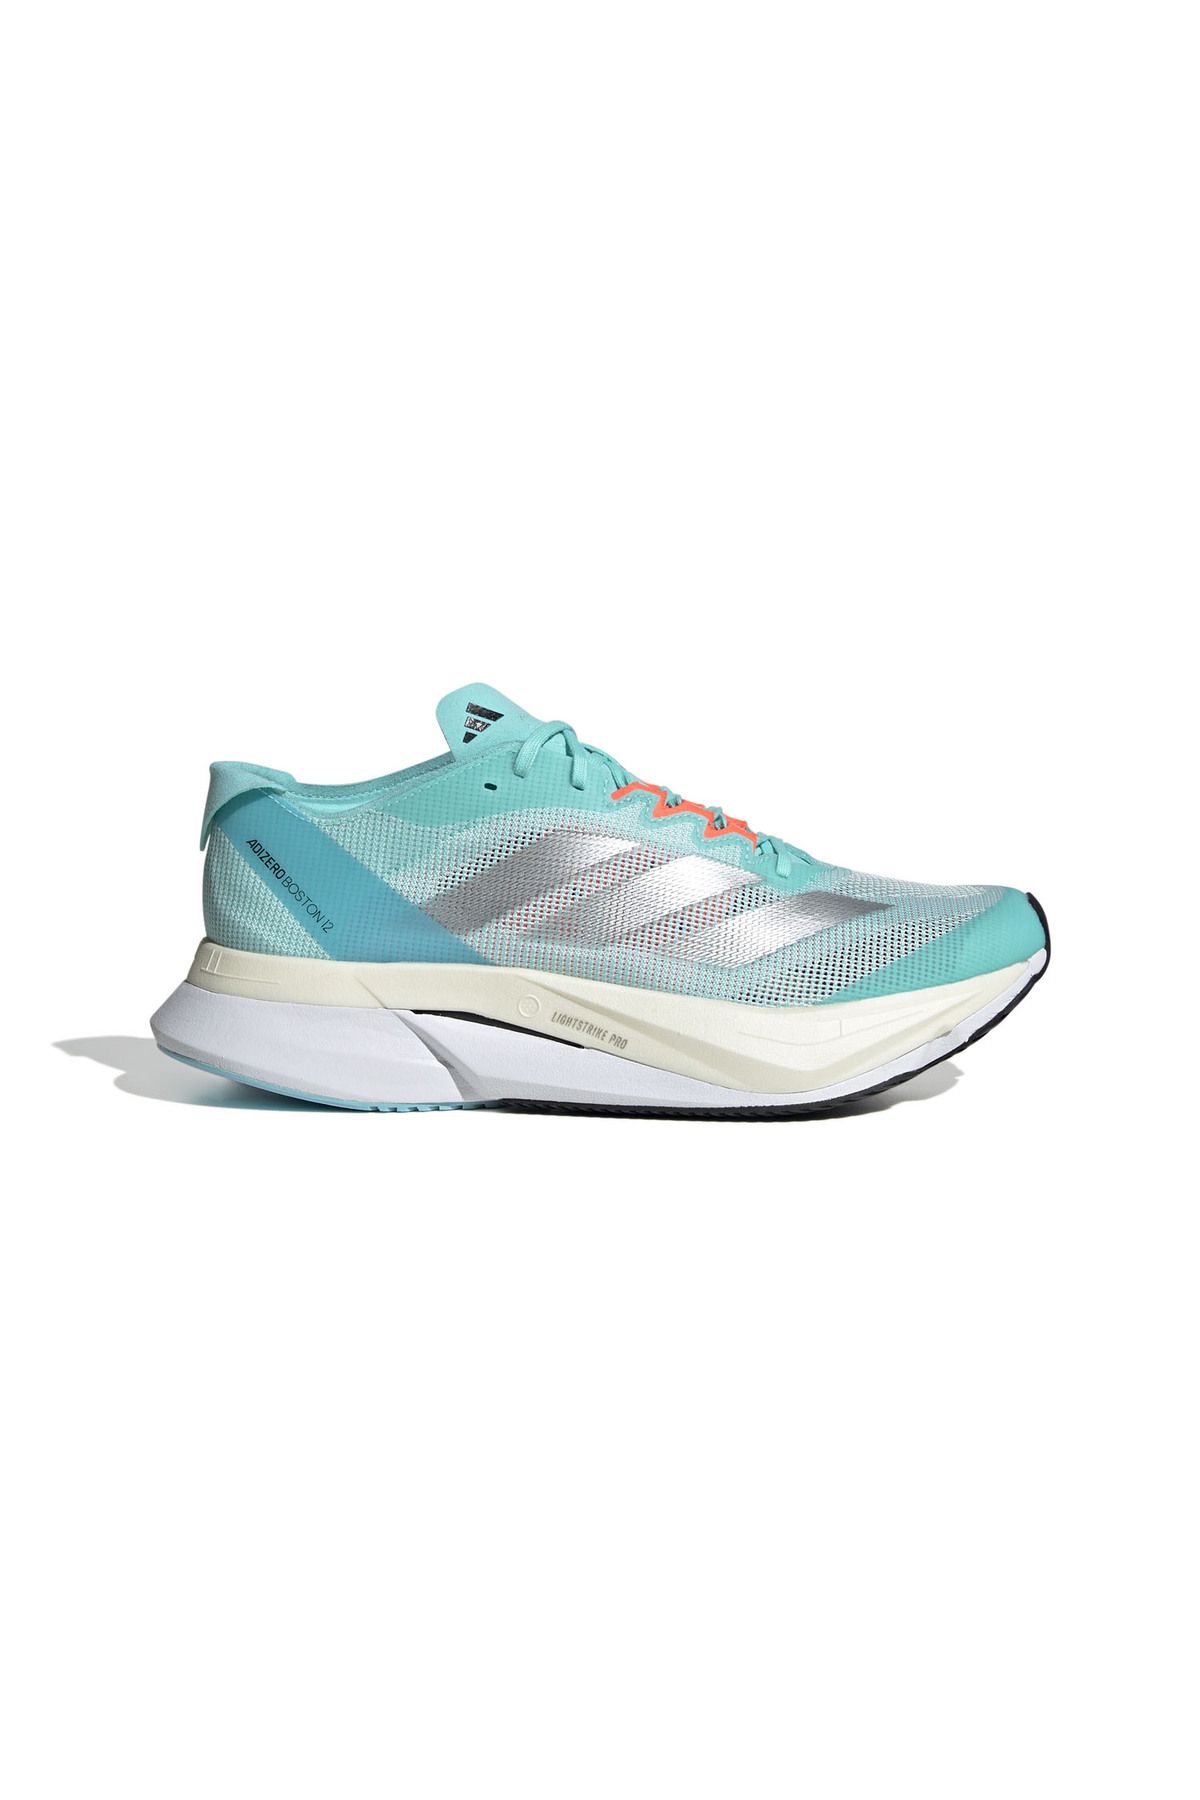 adidas Adizero Boston 12 Kadın Koşu Ayakkabısı